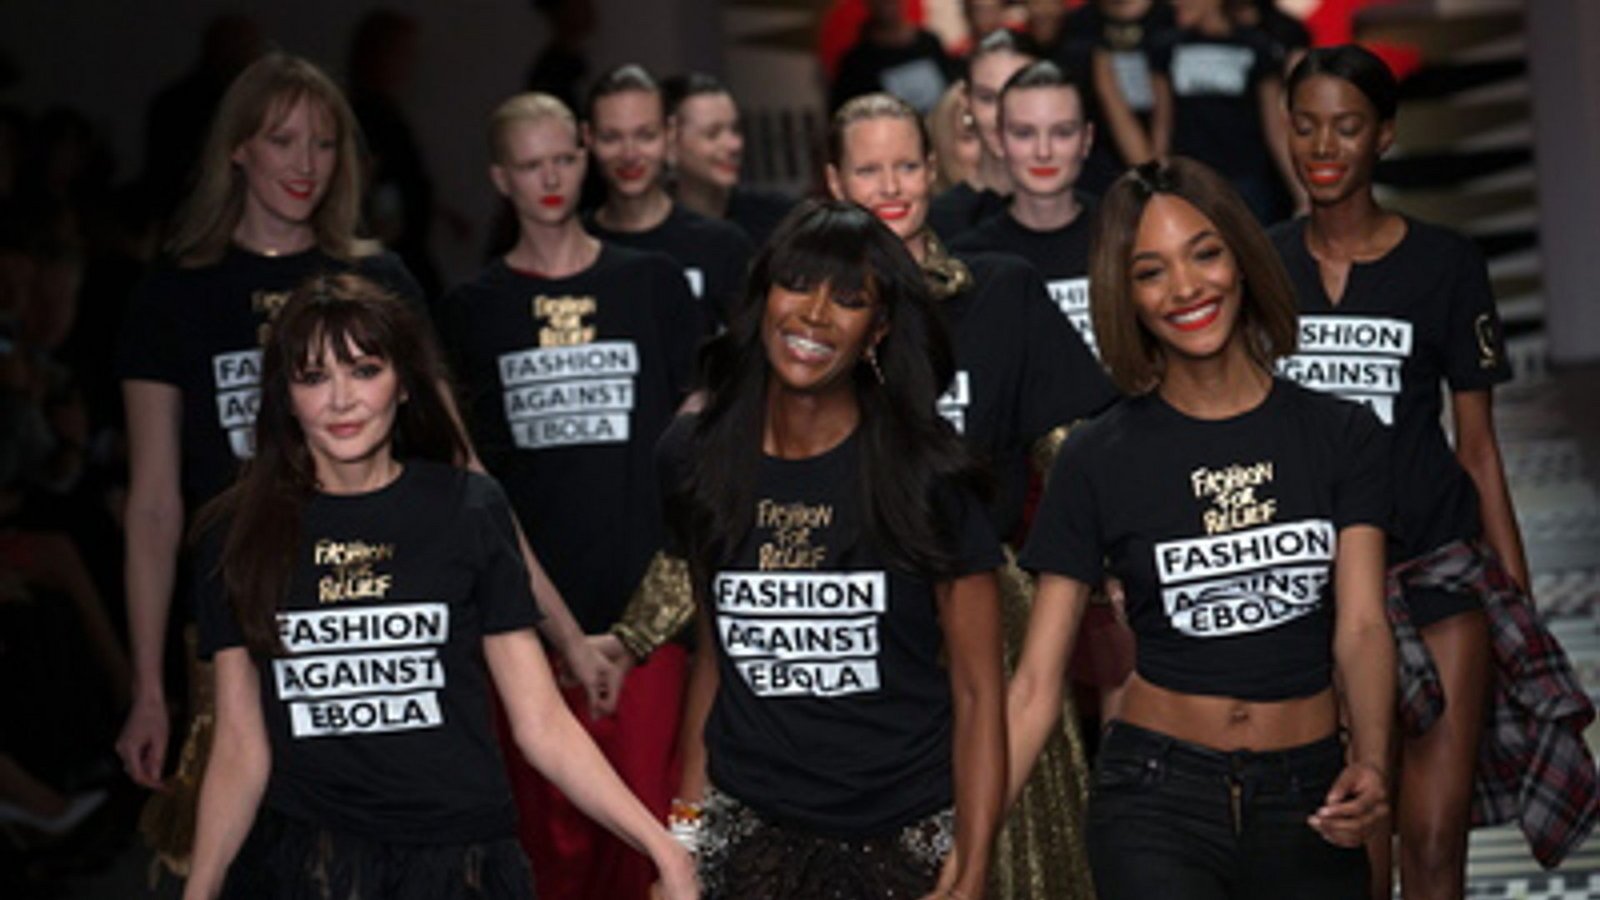 Campbell engagiert sich für wohltätige Zwecke und gründete 2005 die gemeinnützige Organisation Fashion For Relief, um mit Hilfe von Modeshows Geld für die Opfer des Hurrikans Katrina, des japanischen Tsunamis und der Ebola-Epidemie in ganz Westafrika zu sammelnFoto: dpa